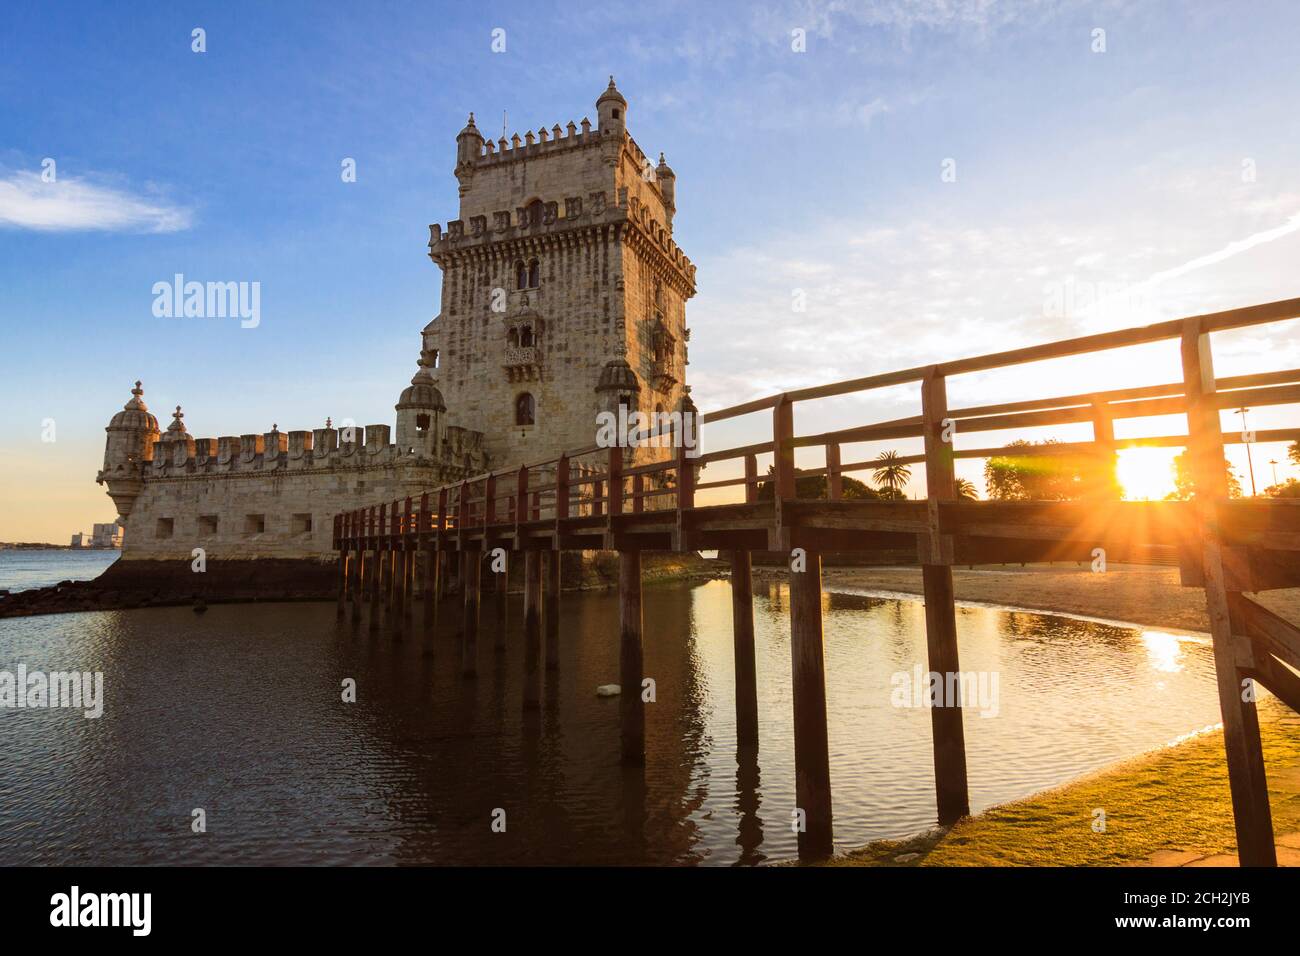 Lissabon, Portugal: Turm von Belém Aussicht bei Sonnenuntergang. Die UNESCO-Gebäude wurde im Jahr 1515 von Francisco de Arruda entworfen, der Hafen der Stadt zu verteidigen. Stockfoto